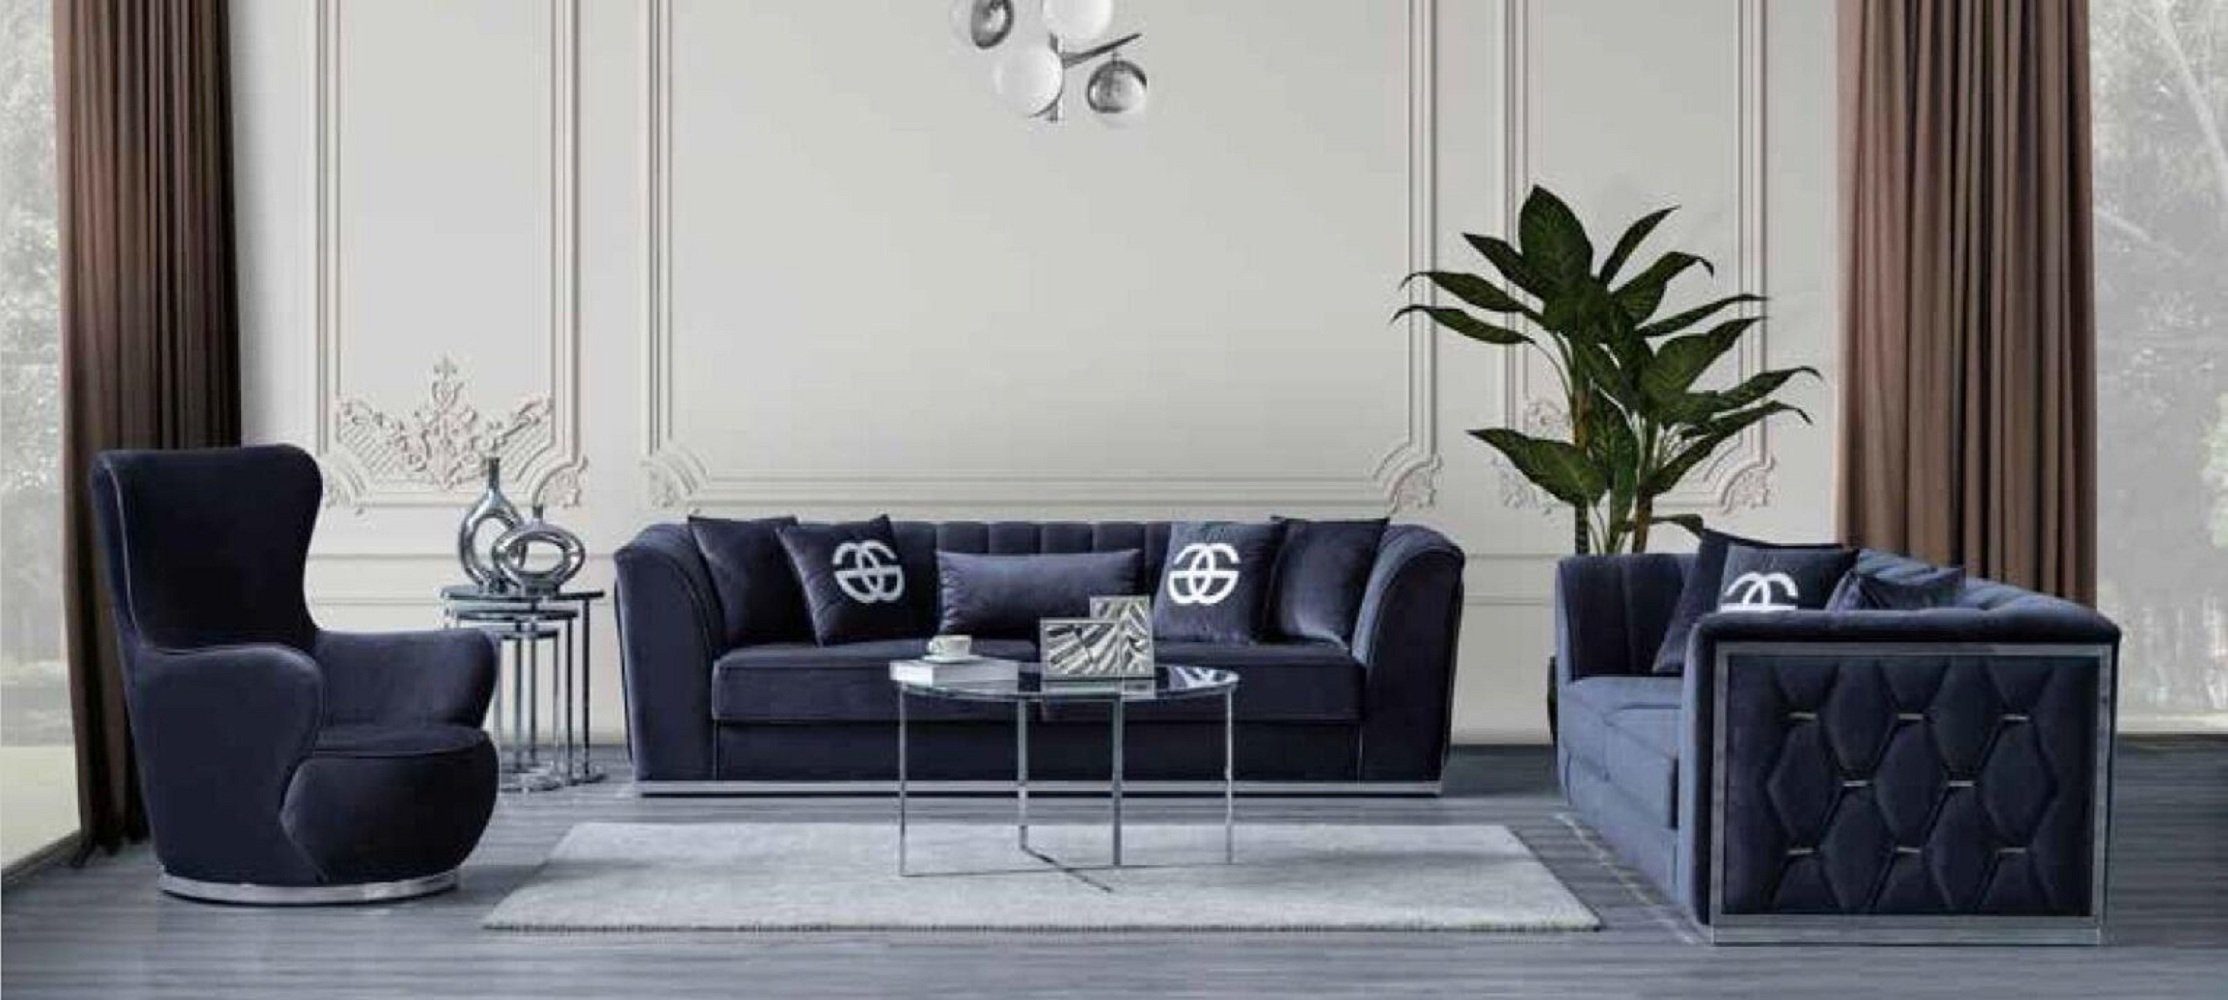 JVmoebel 3-Sitzer Wohnzimmer Sofa Dreisitzer Couch Sofamöbel Textilcouch Moderne, 1 Teile, Made in Europa